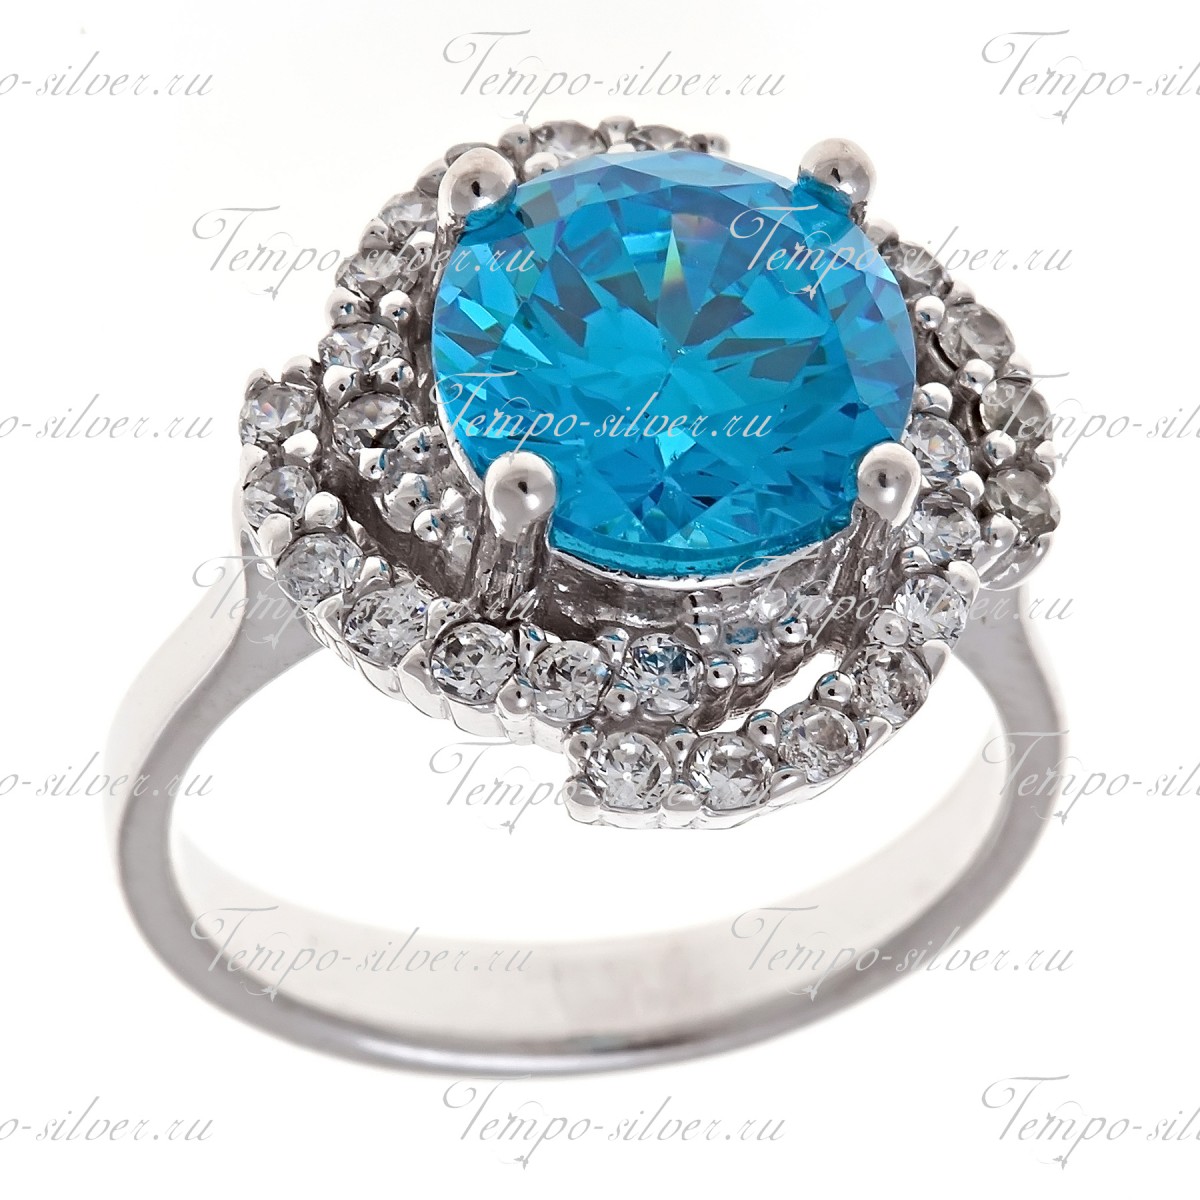 Кольцо из серебра с крупным голубым камнем в центре композиции в форме цветка